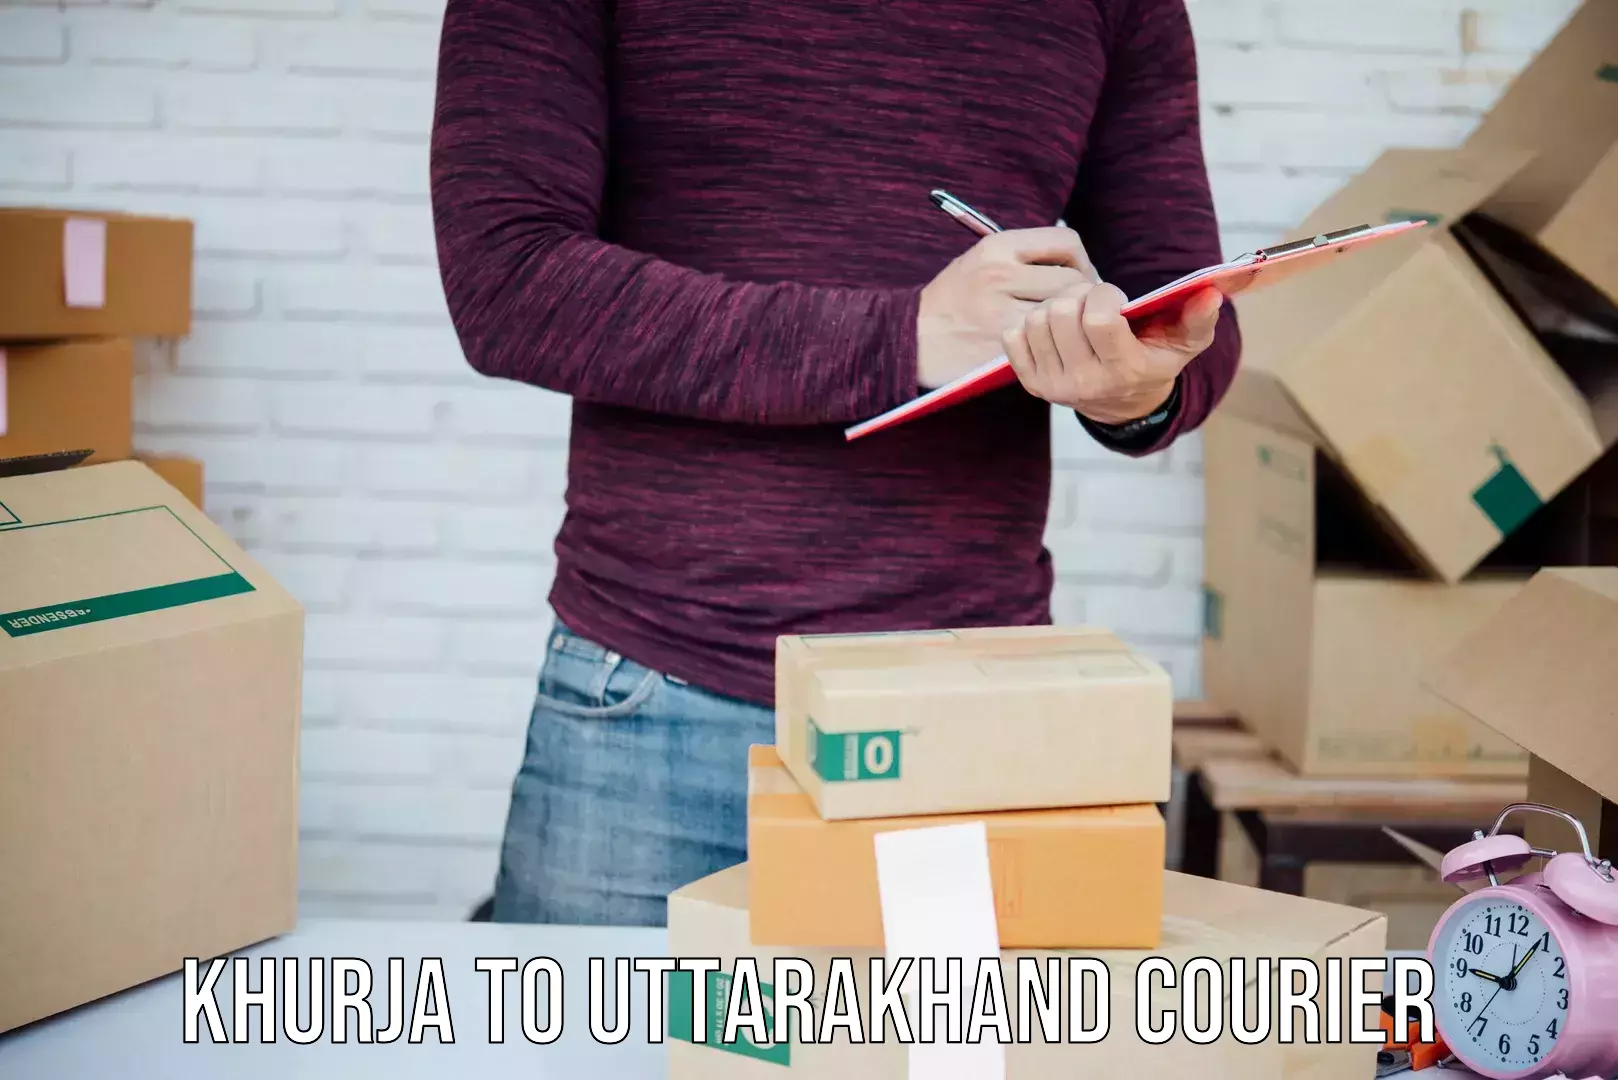 Courier insurance Khurja to Uttarakhand